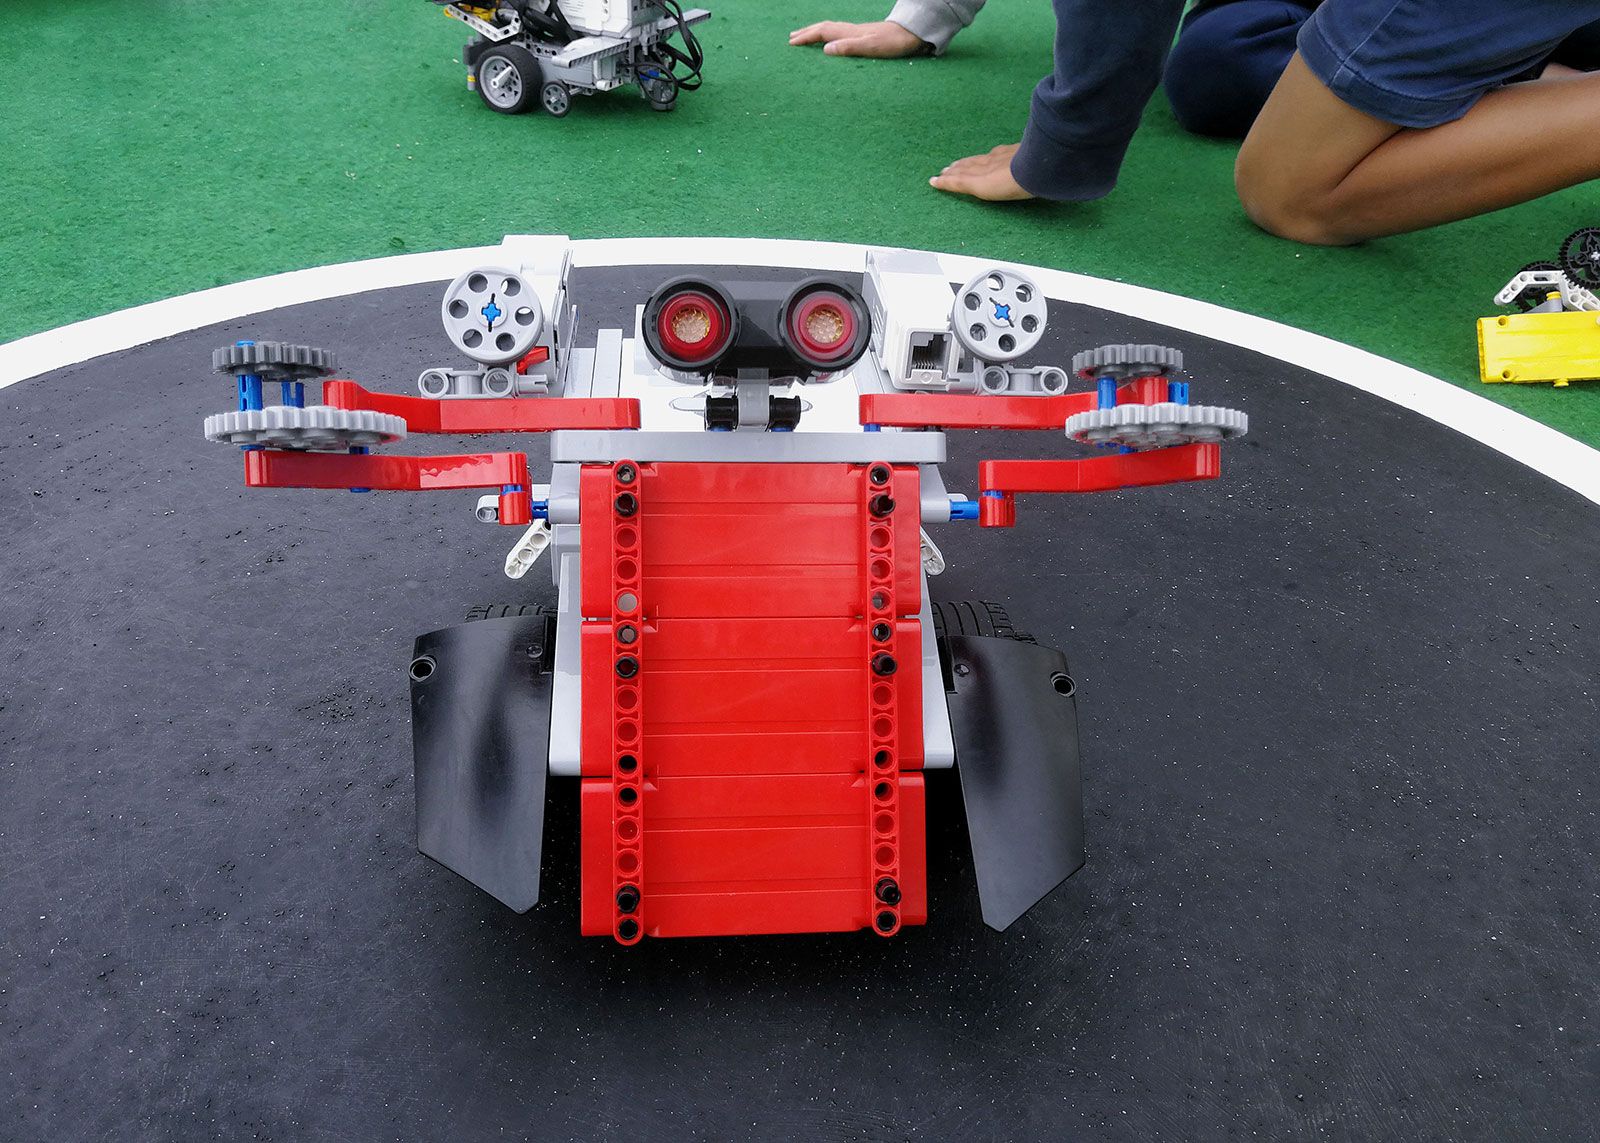 Børsterobotter fra Danmarks Robotfestival